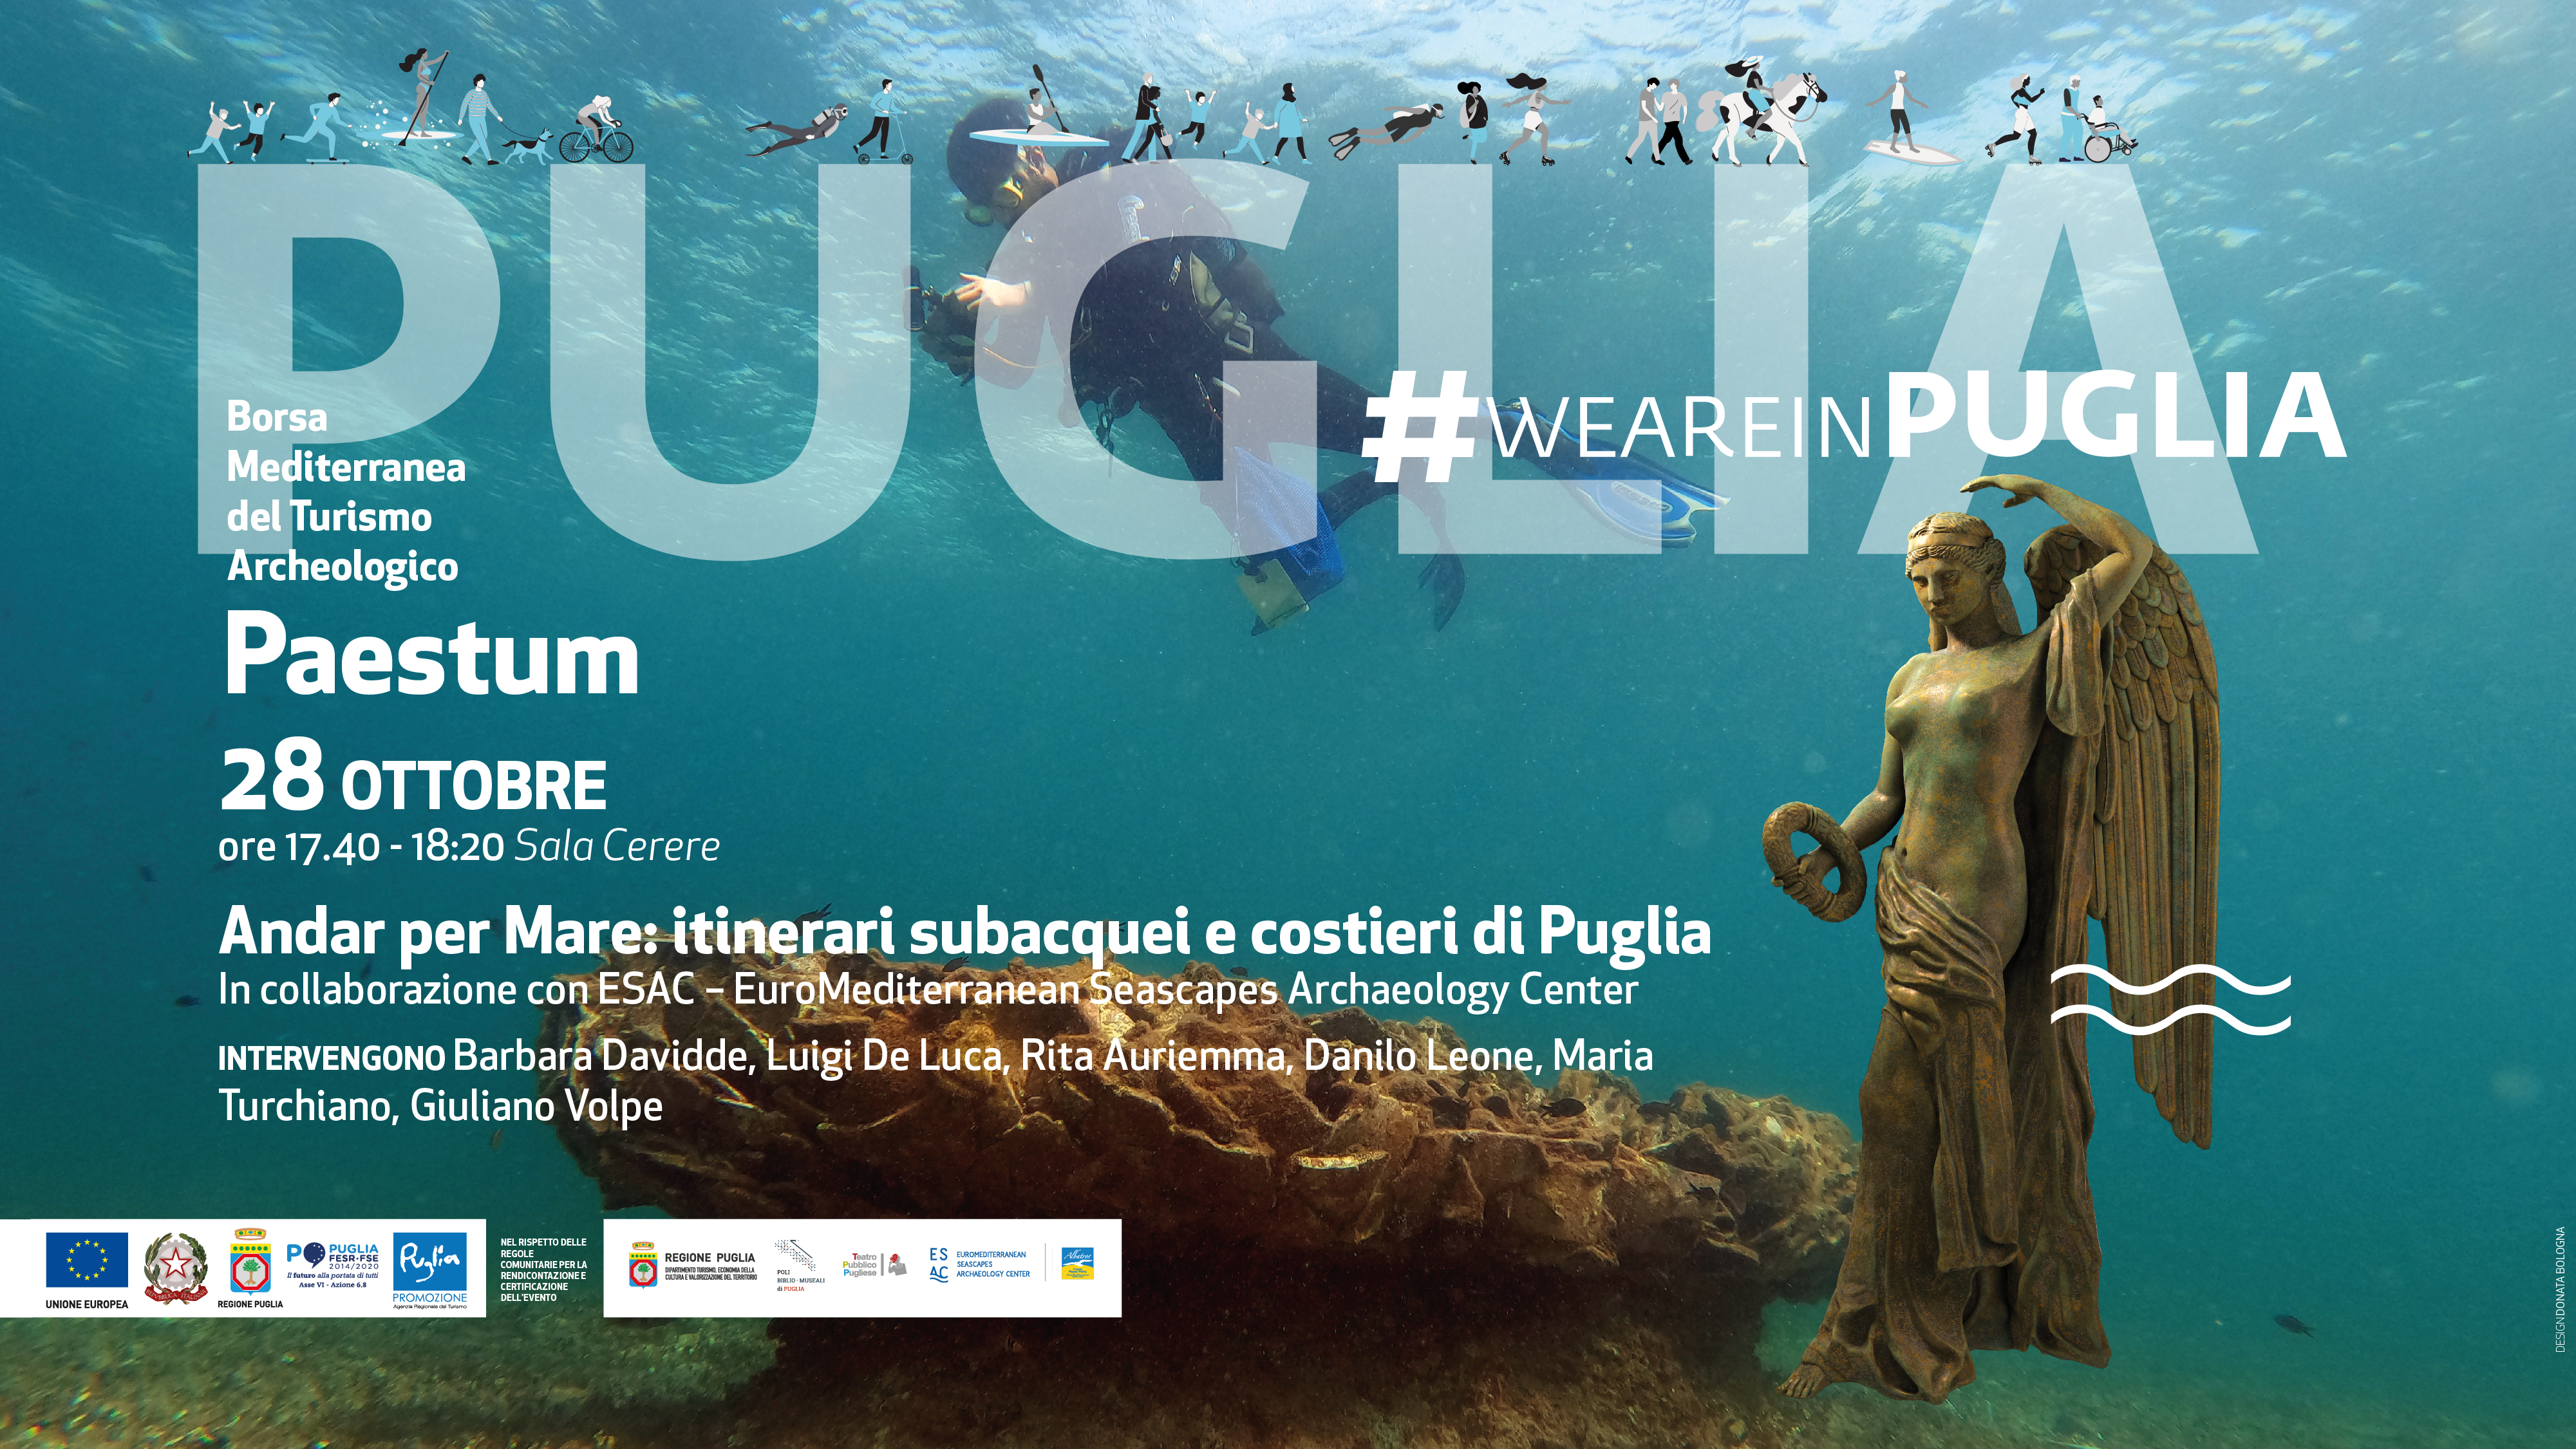 Galleria La Regione Puglia alla Borsa Mediterranea del Turismo Archeologico di Paestum dal 27 al 30 ottobre 2022 - Diapositiva 1 di 5